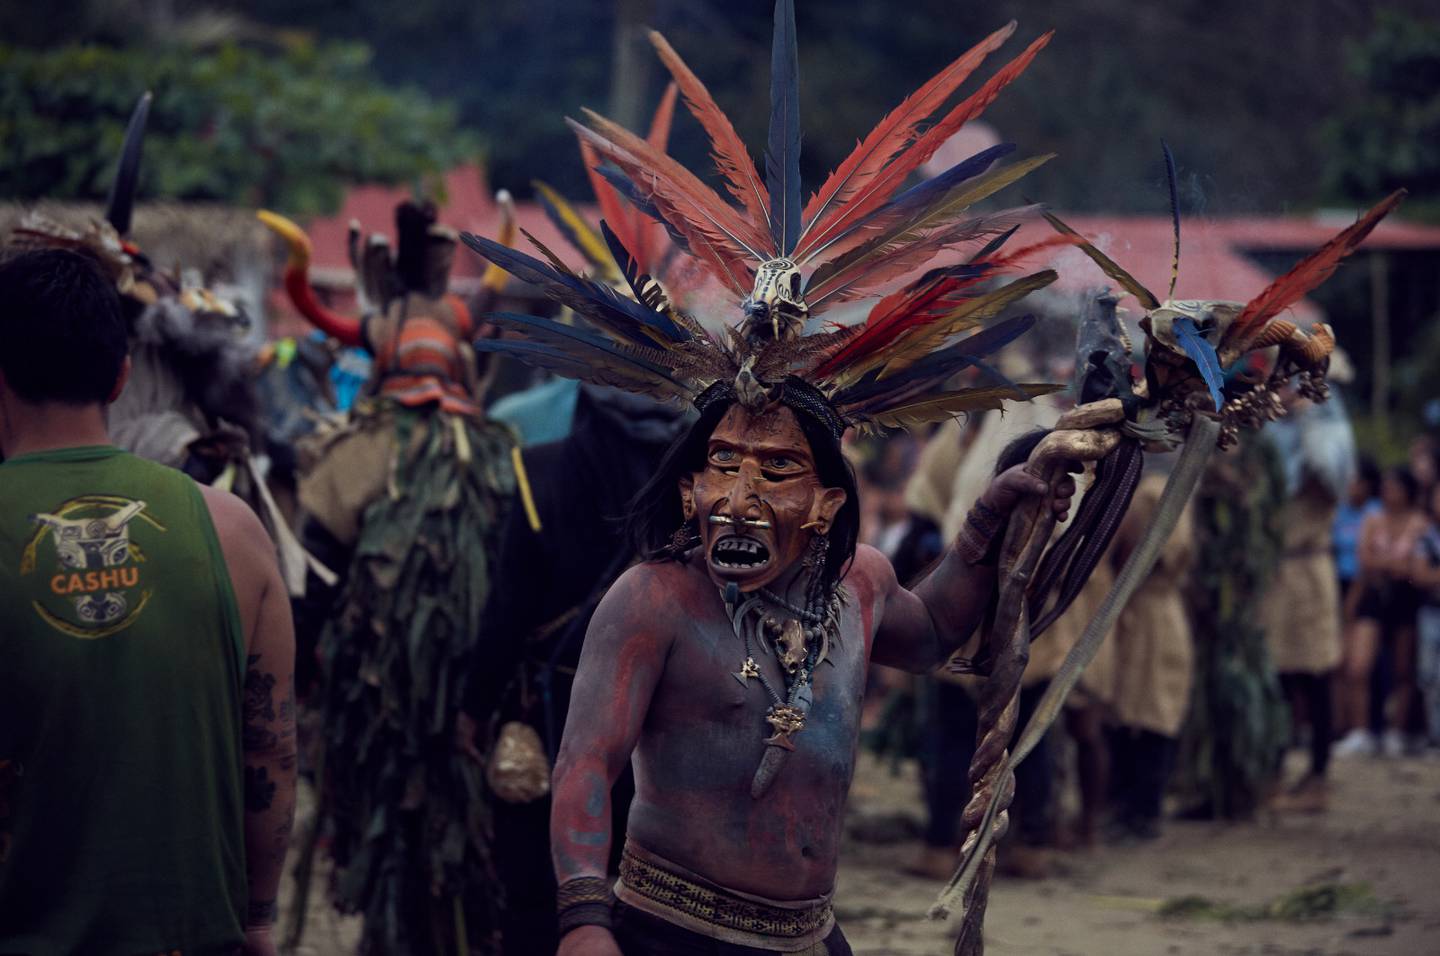 'Mesoamérica: Tierra de Huellas' reúne la experiencia de más de 50 artistas mesoamericanos en temas como migración, narcotráfico, trata de personas, discriminación y desigualdad. (Foto: Alexander Chaves Gould)